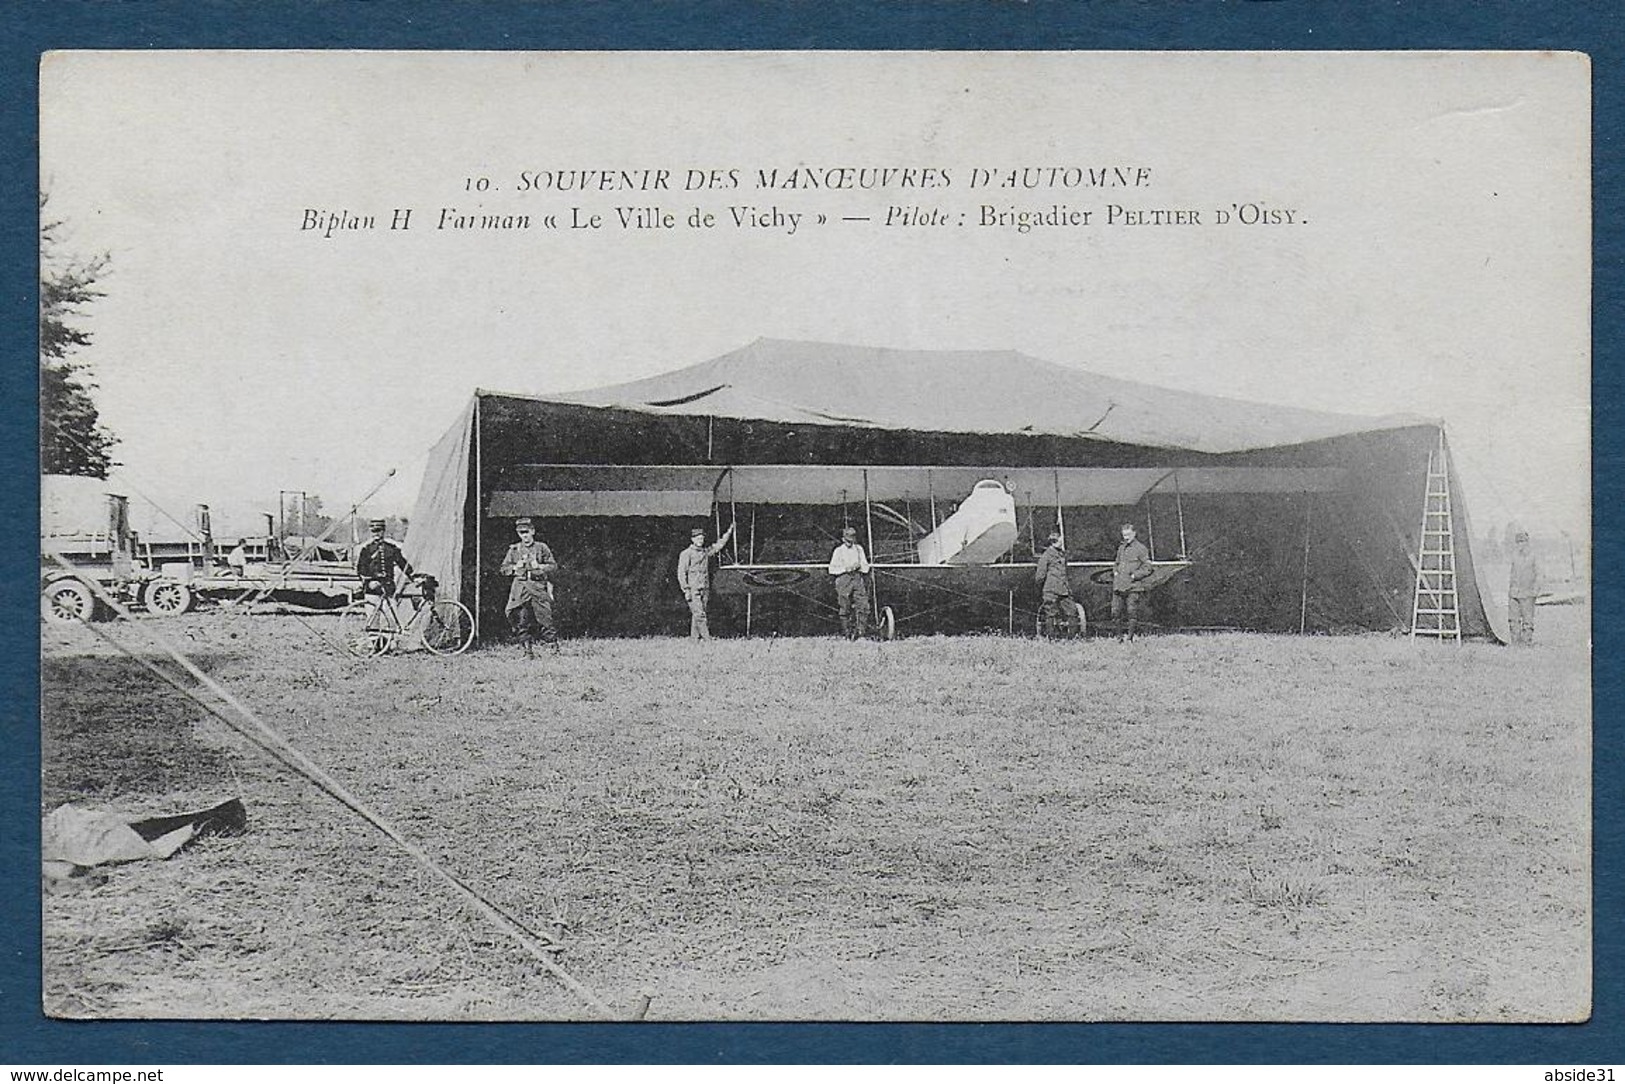 Souvenir Des Manoeuvres D' Automne -  Biplan H. Farmann " Le Ville De Vichy "- Pilote: Brigadier Peltier D' Oisy - Aviateurs